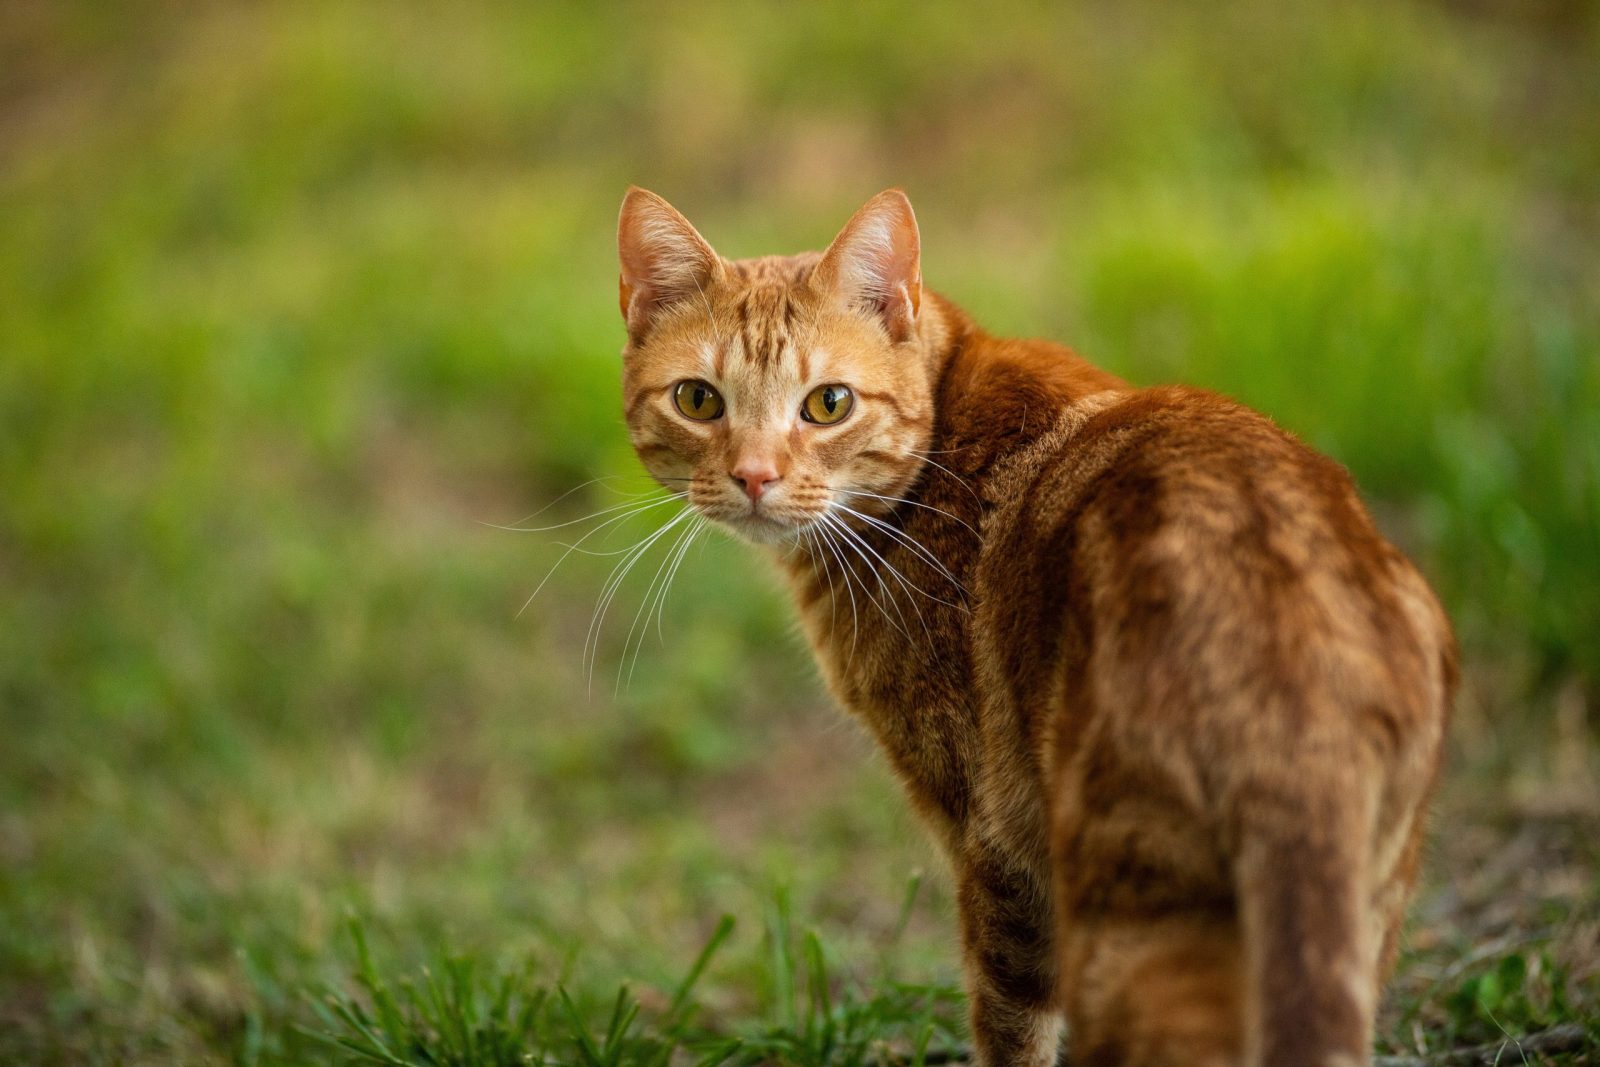 Instytut Naukowy spotyka się z ogromnym sprzeciwem po zaklasyfikowaniu kotów domowych jako „inwazyjny gatunek obcy”